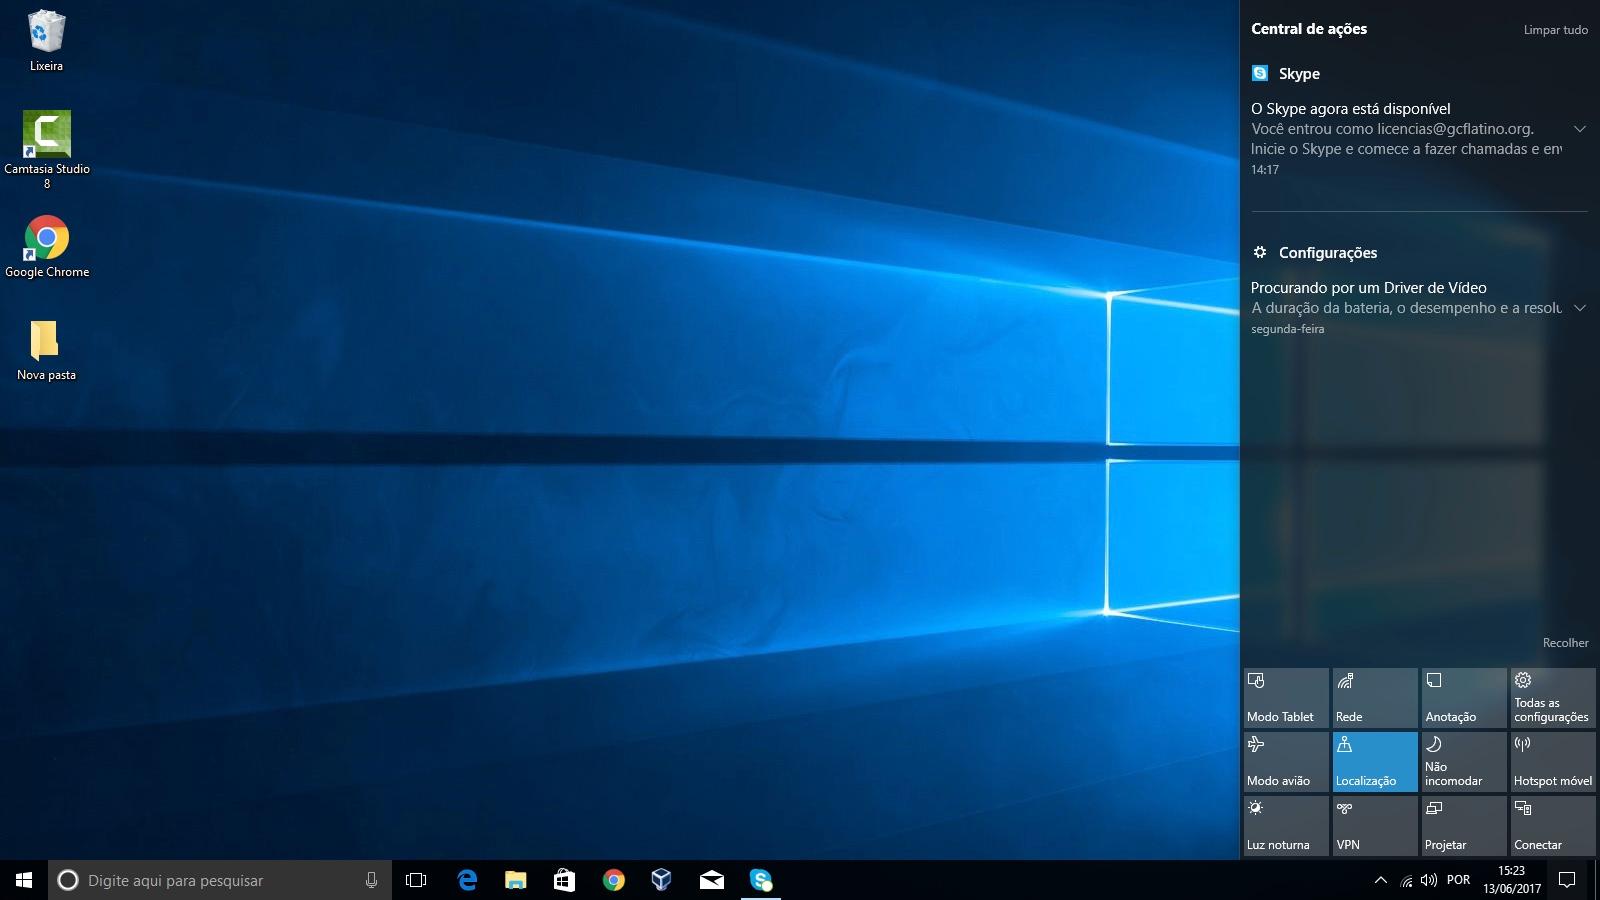 O Windows 10 tem uma central da ações na parte direita da tela.